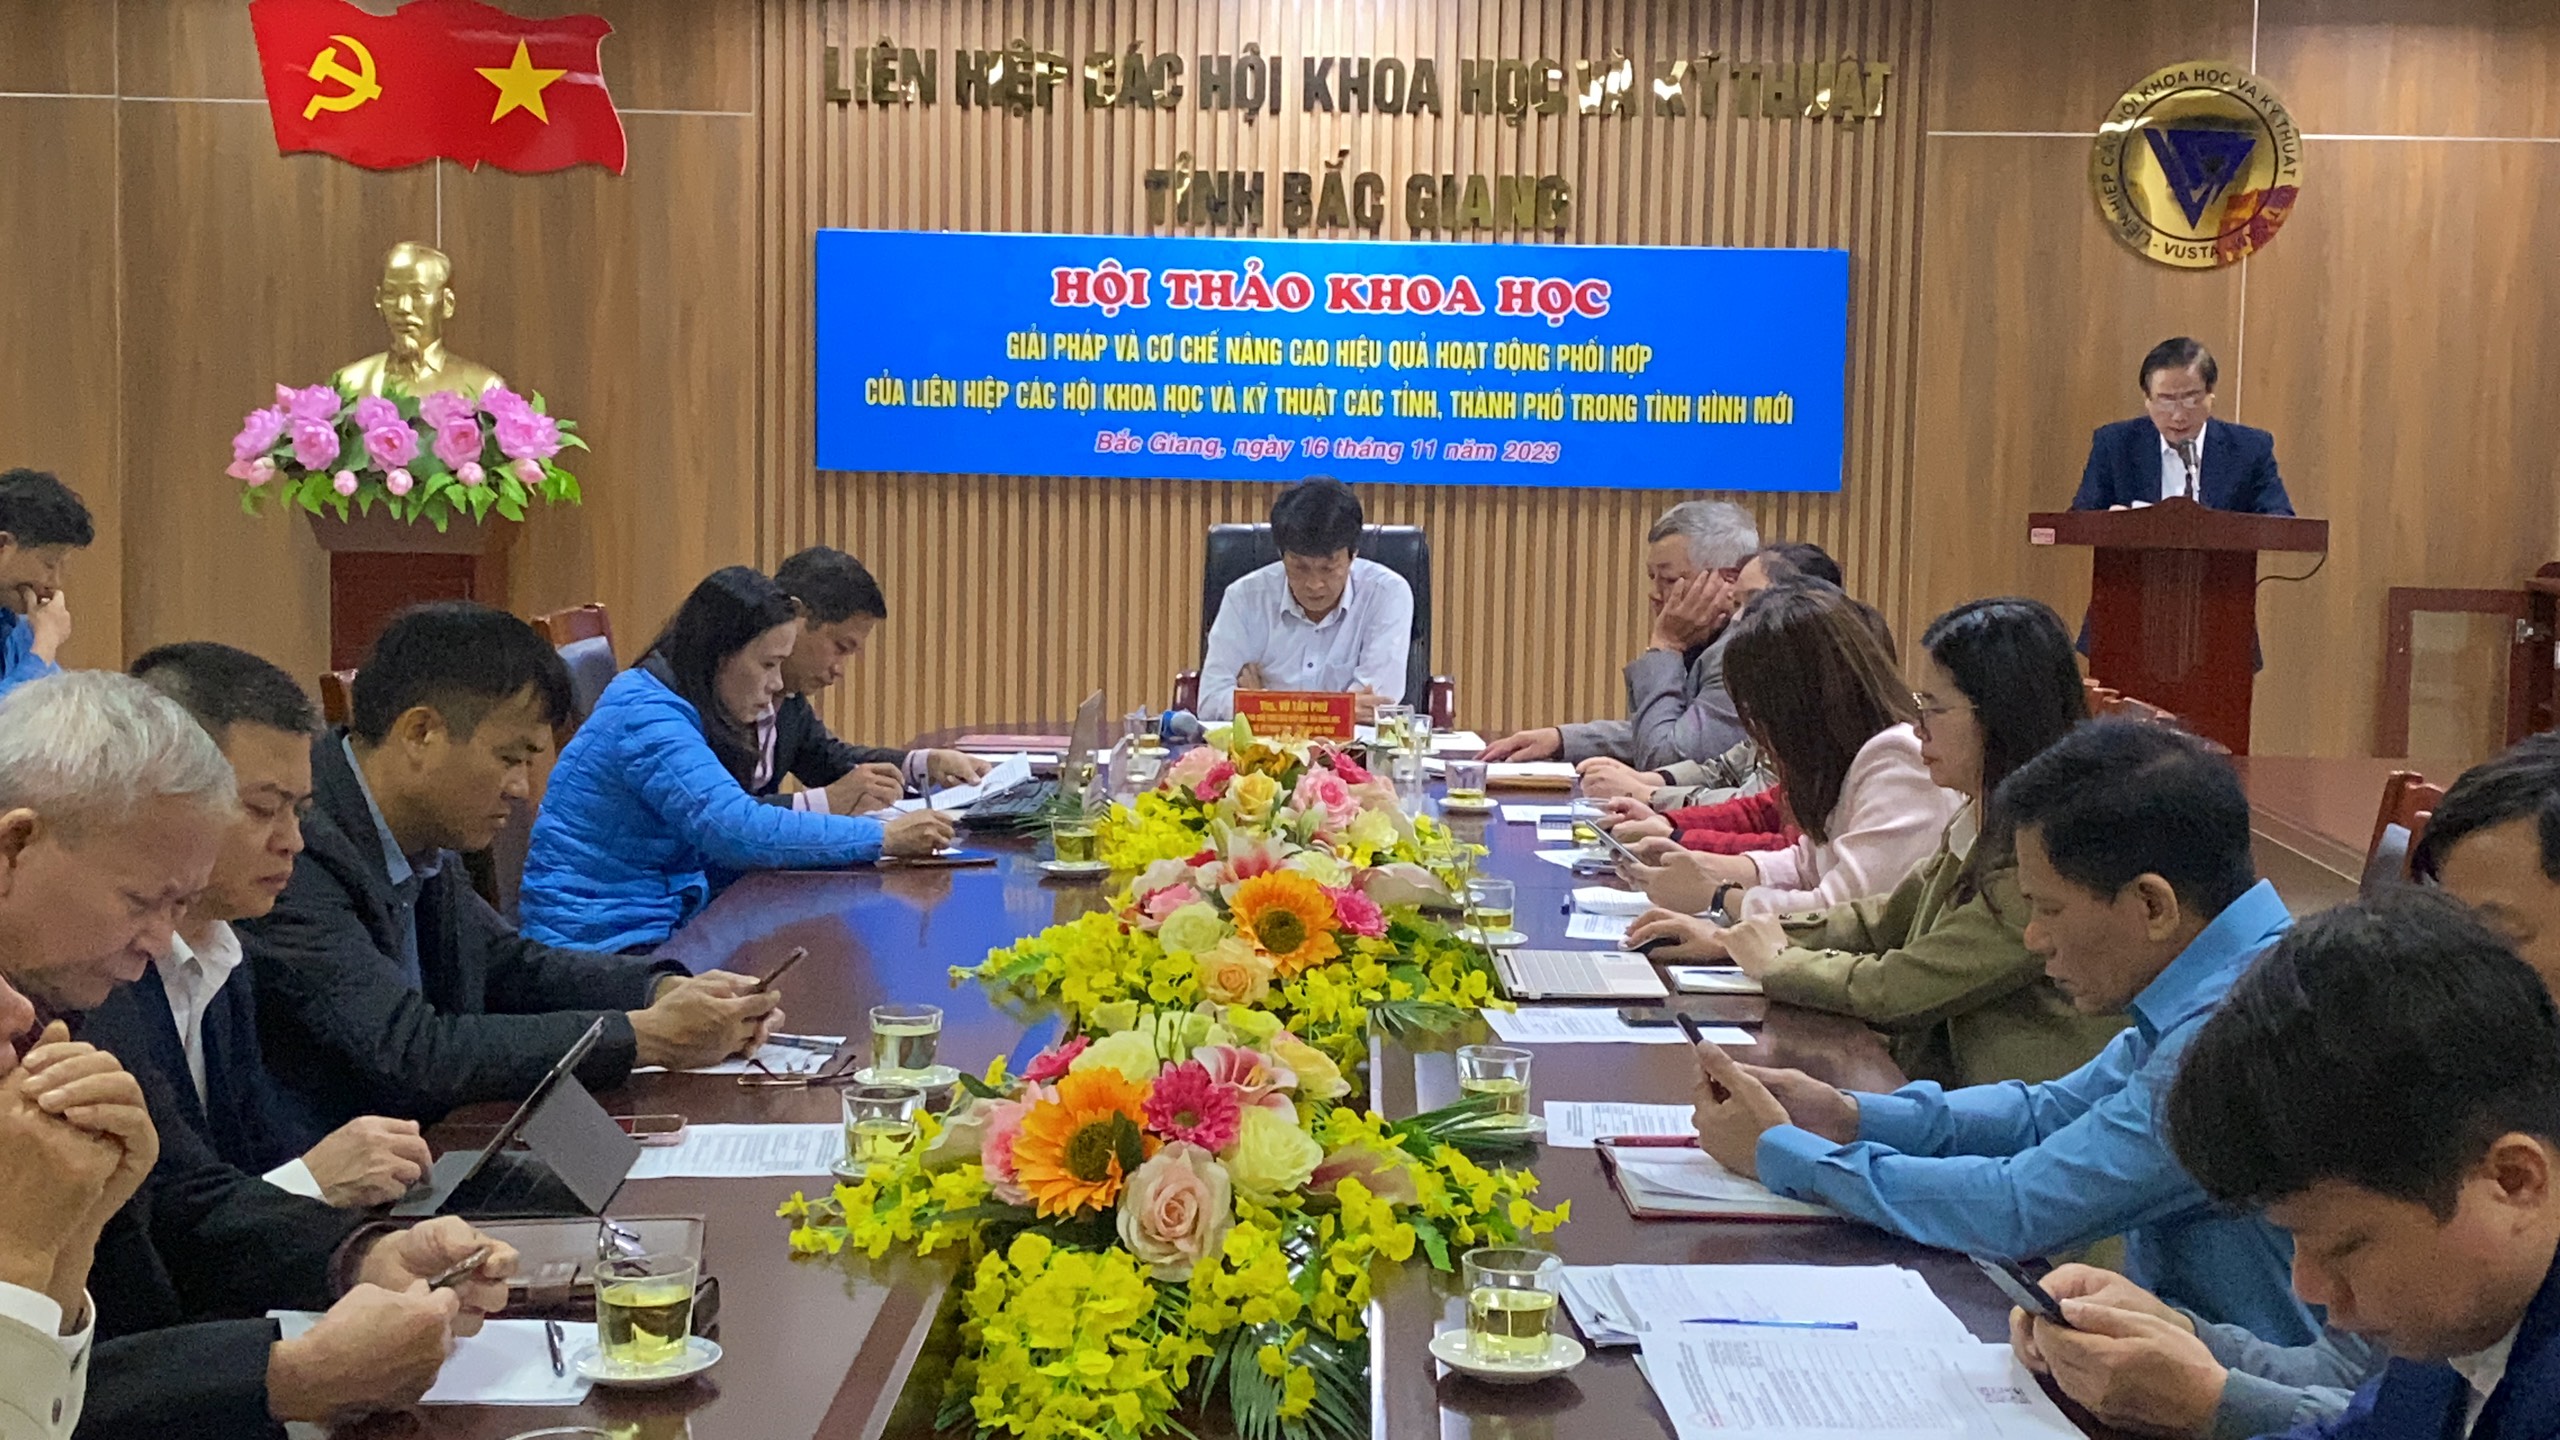 Bắc Giang tổ chức Hội thảo khoa học cấp bộ: “Giải pháp và cơ chế nâng cao hiệu quả hoạt động phối hợp của Liên hiệp các hội Khoa học và Kỹ thuật các tỉnh, thành phố trong tình hình mới”